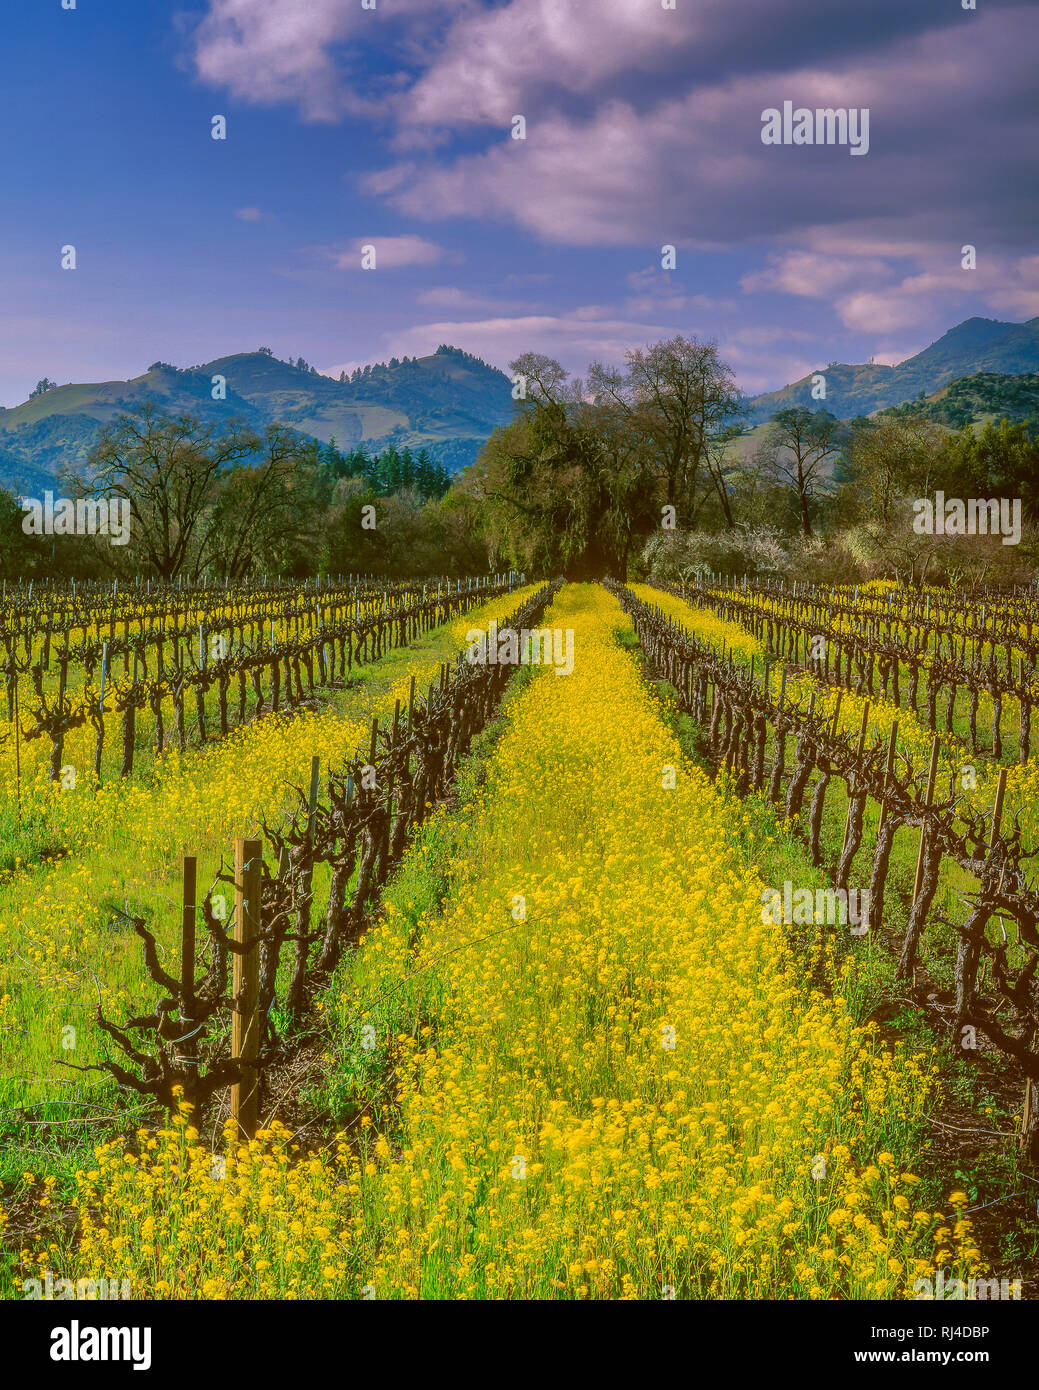 La senape, vitigni, Calistoga, Napa Valley, California Foto Stock